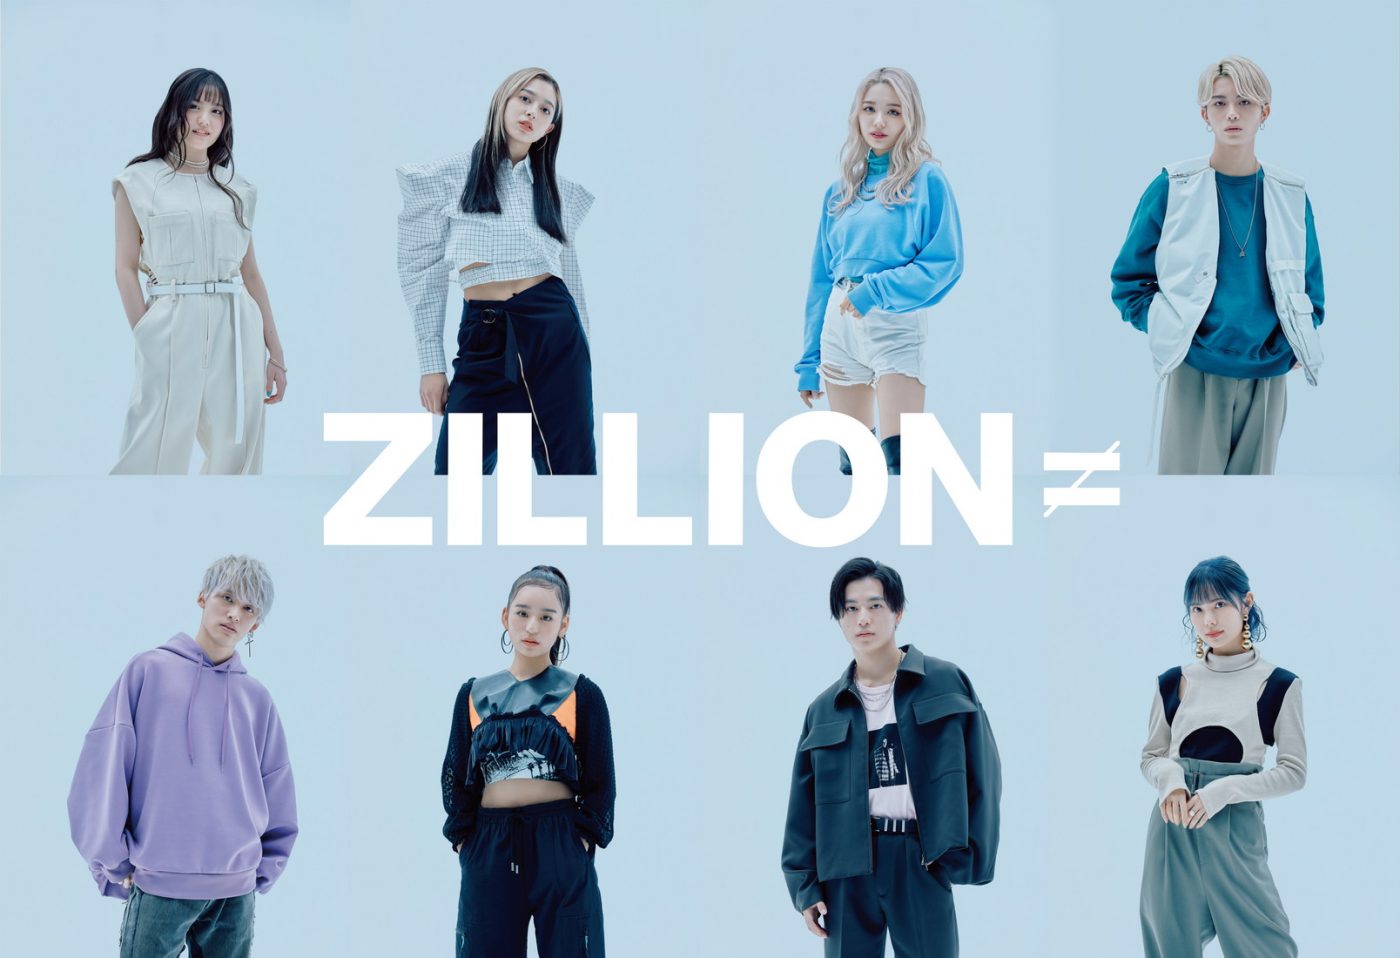 男女8人組ダンスボーカルグループ・ZILLION、目標にしてきたZeppでのショーケースライブが決定